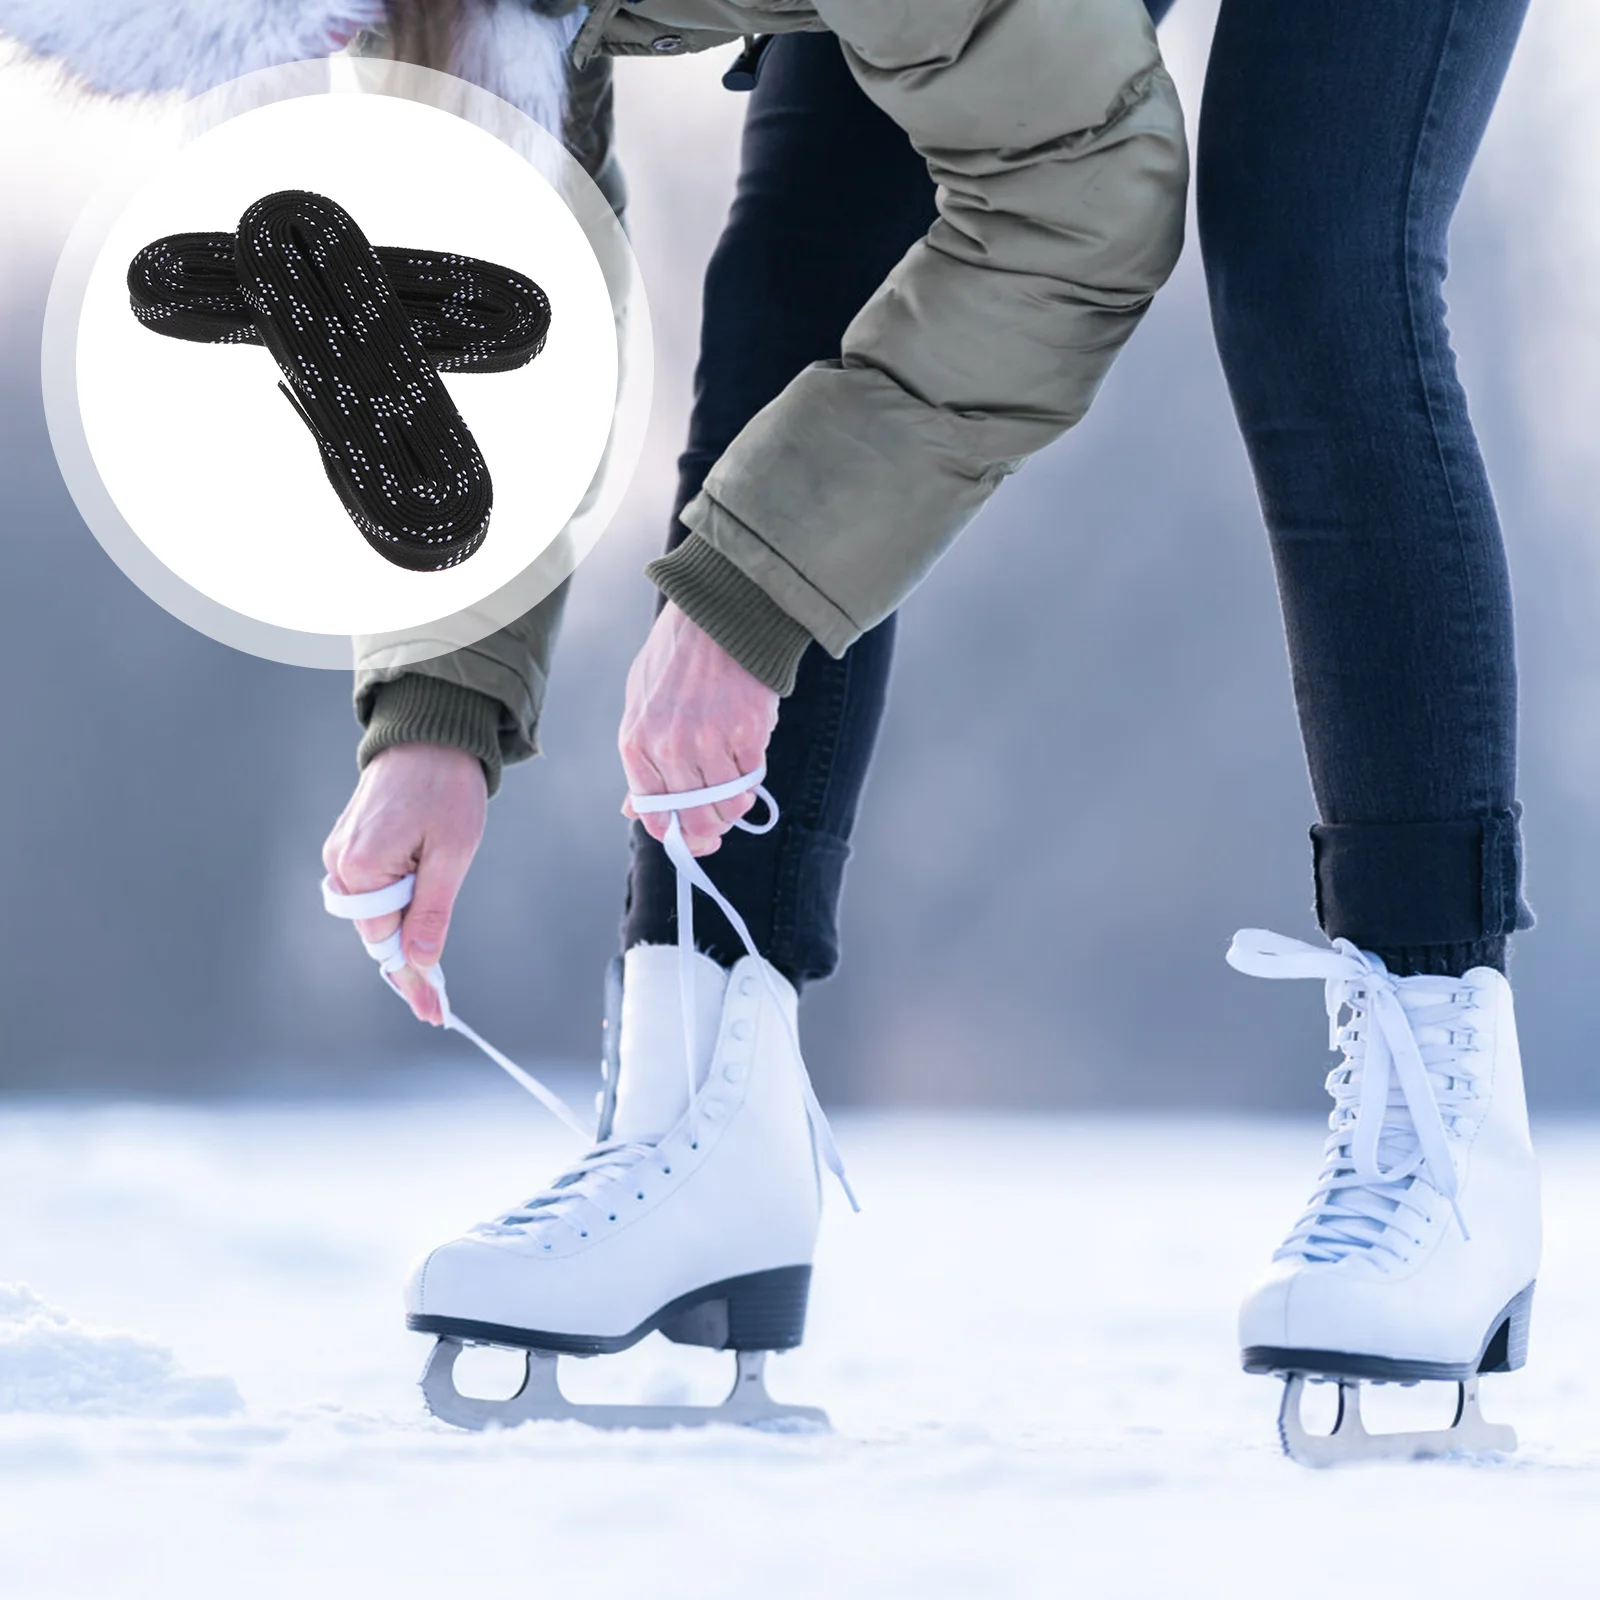 

Waxed Hockey Laces Wide Shoe Laces Flat Shoelaces Hockey Laces Anti- Freezing Shoe Strings for Sports Skiing Hockey Skates (